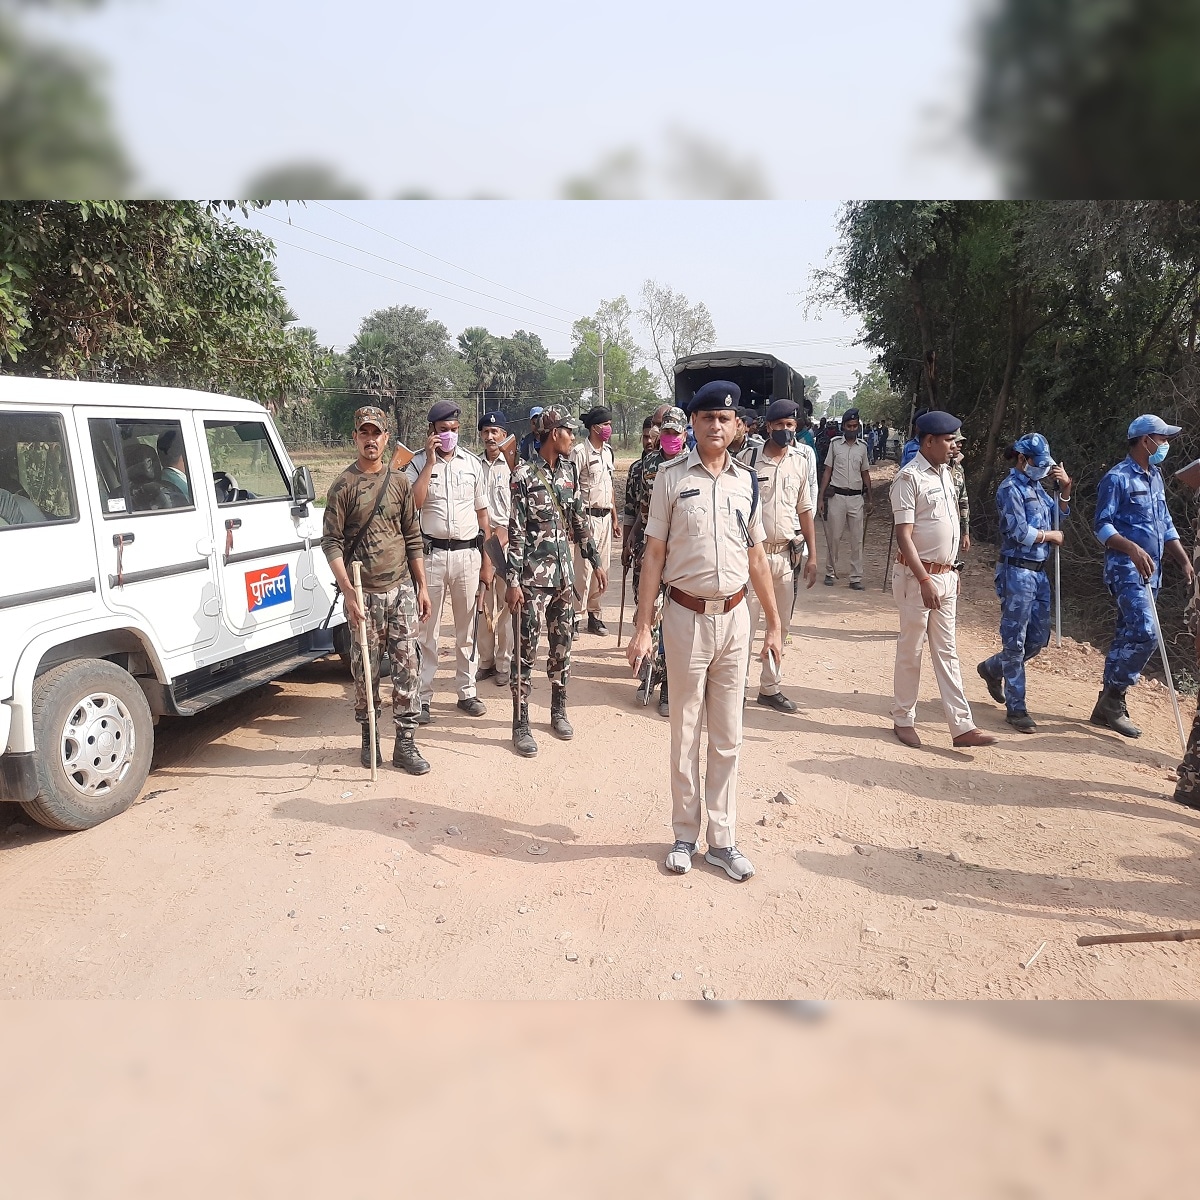 बालू माफियाओं खिलाफ बड़ी कार्रवाई, हथियारों के जखीरे के साथ चार गिरफ्तार  nalanda police seized illegal arms during raid against sand mafias bramk –  News18 Hindi